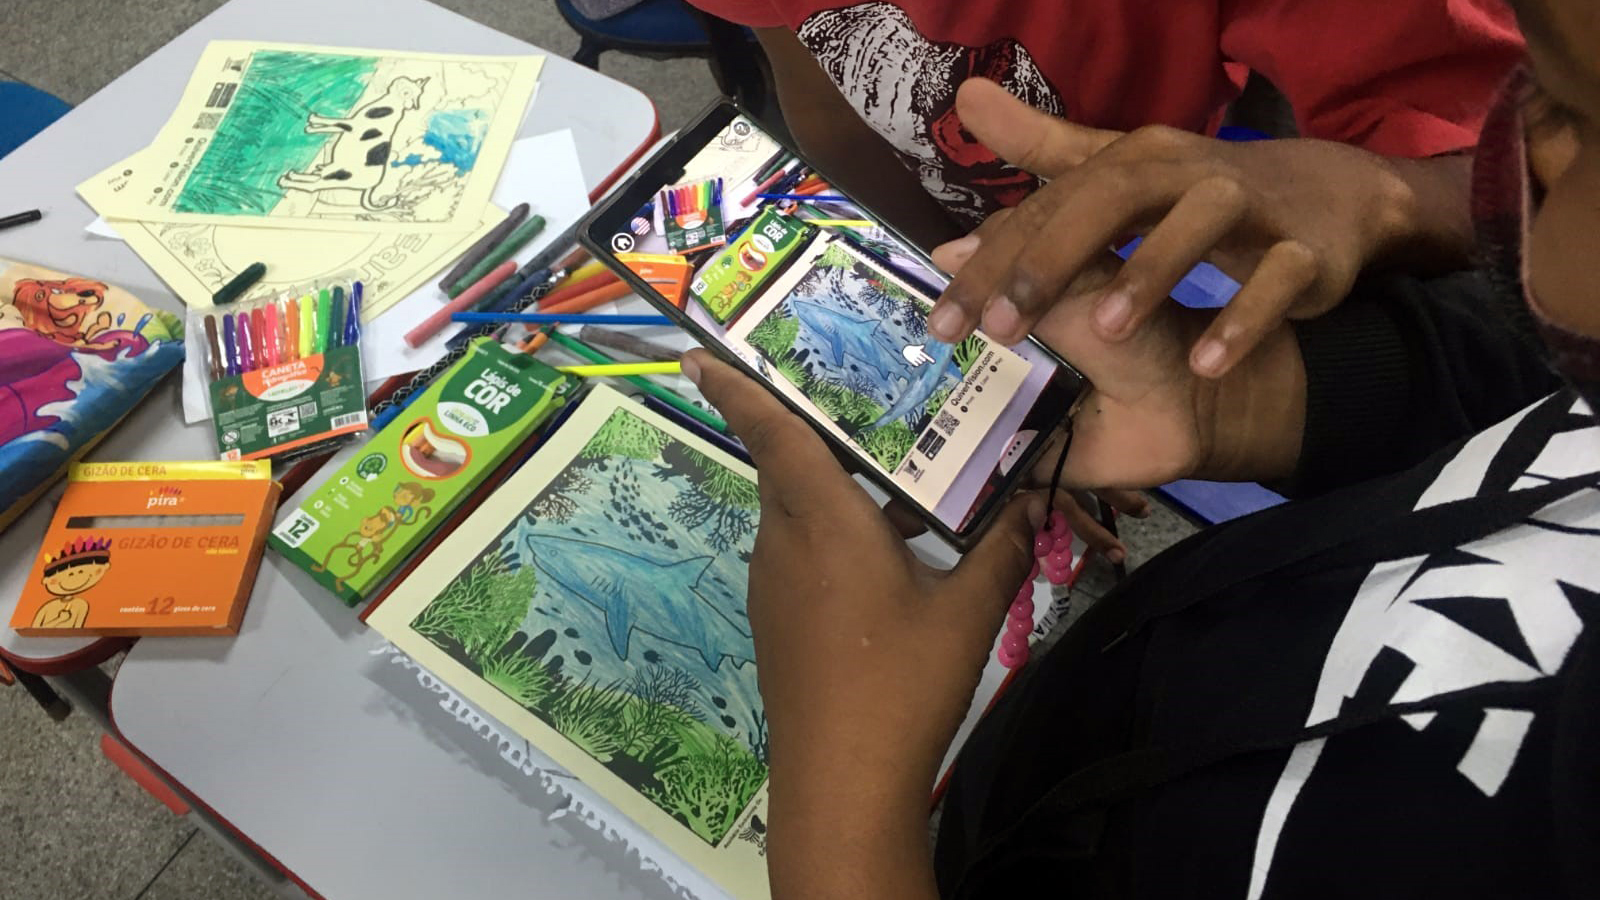 Com o aplicativo Quiver Edu as crianças conseguiram dar vida aos desenhos projetando-os em 3D no ambiente virtual com a ajuda de smartphones